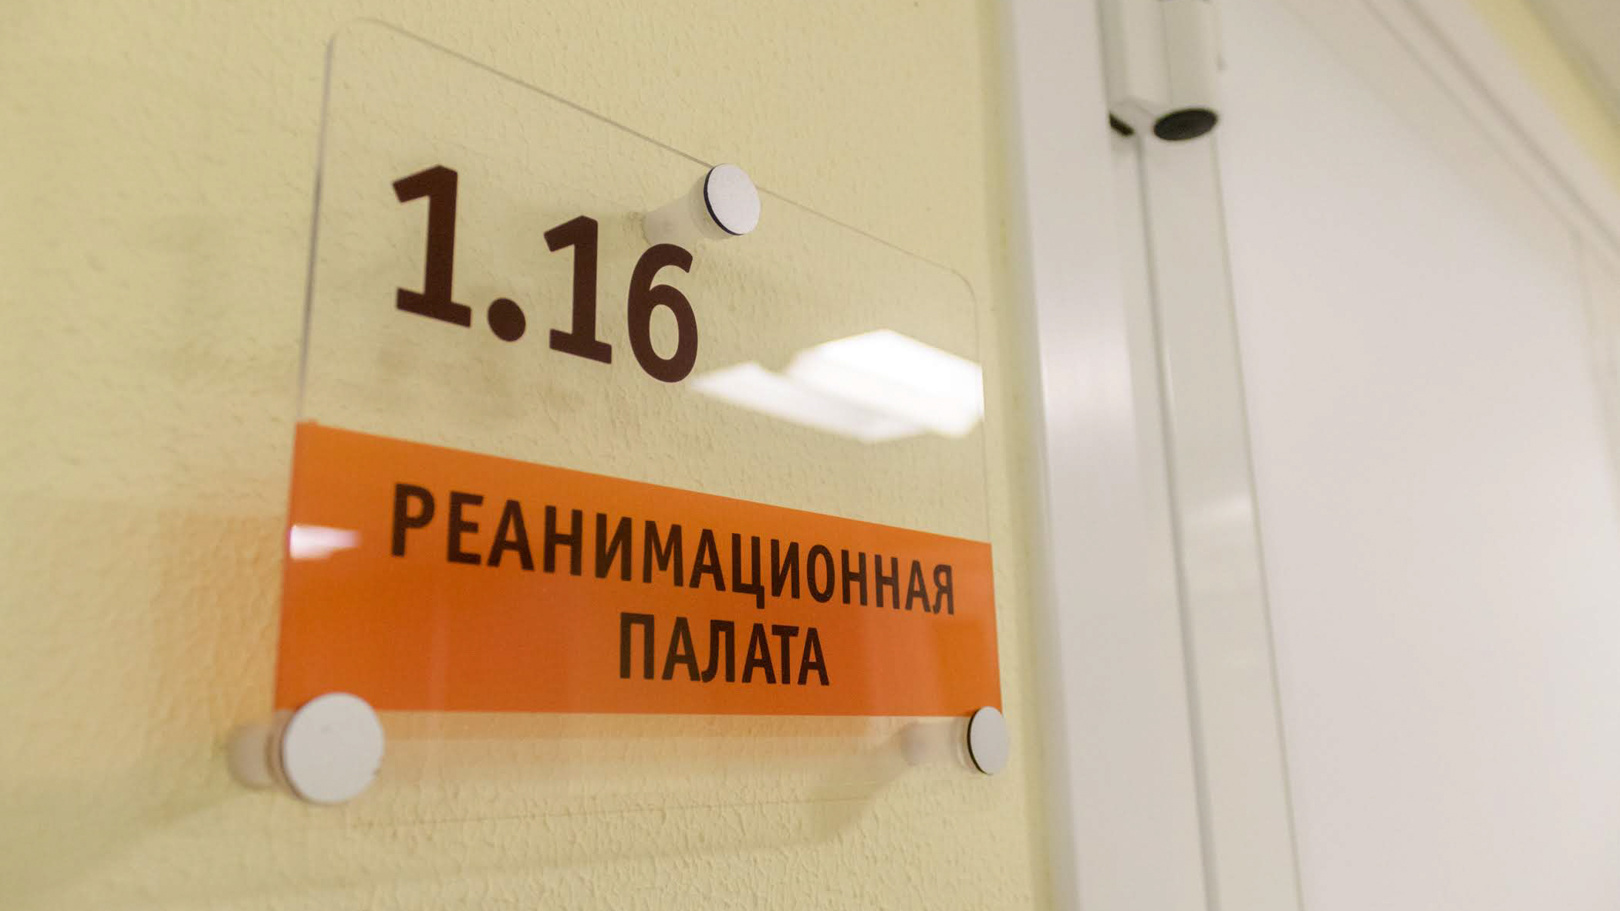 Медики рассказали о состоянии троих детей после ДТП с «Жигулями» в Казани. Двое из них в реанимации